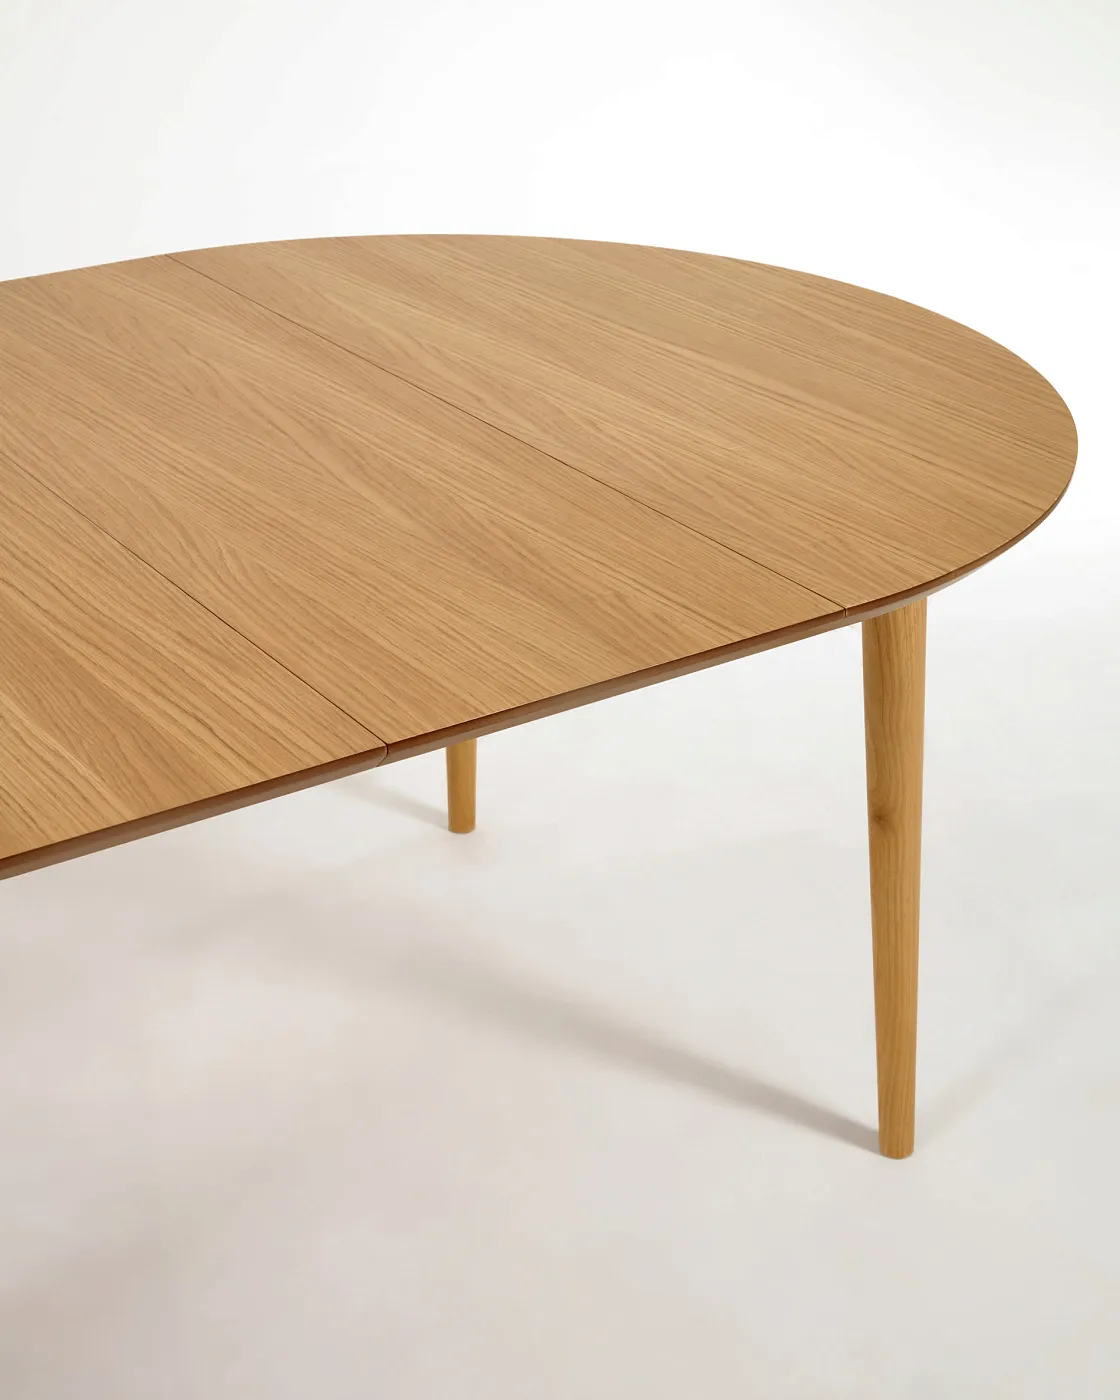 Раздвижной стол La Forma Oqui из МДФ с дубовым шпоном 160 x 100 см